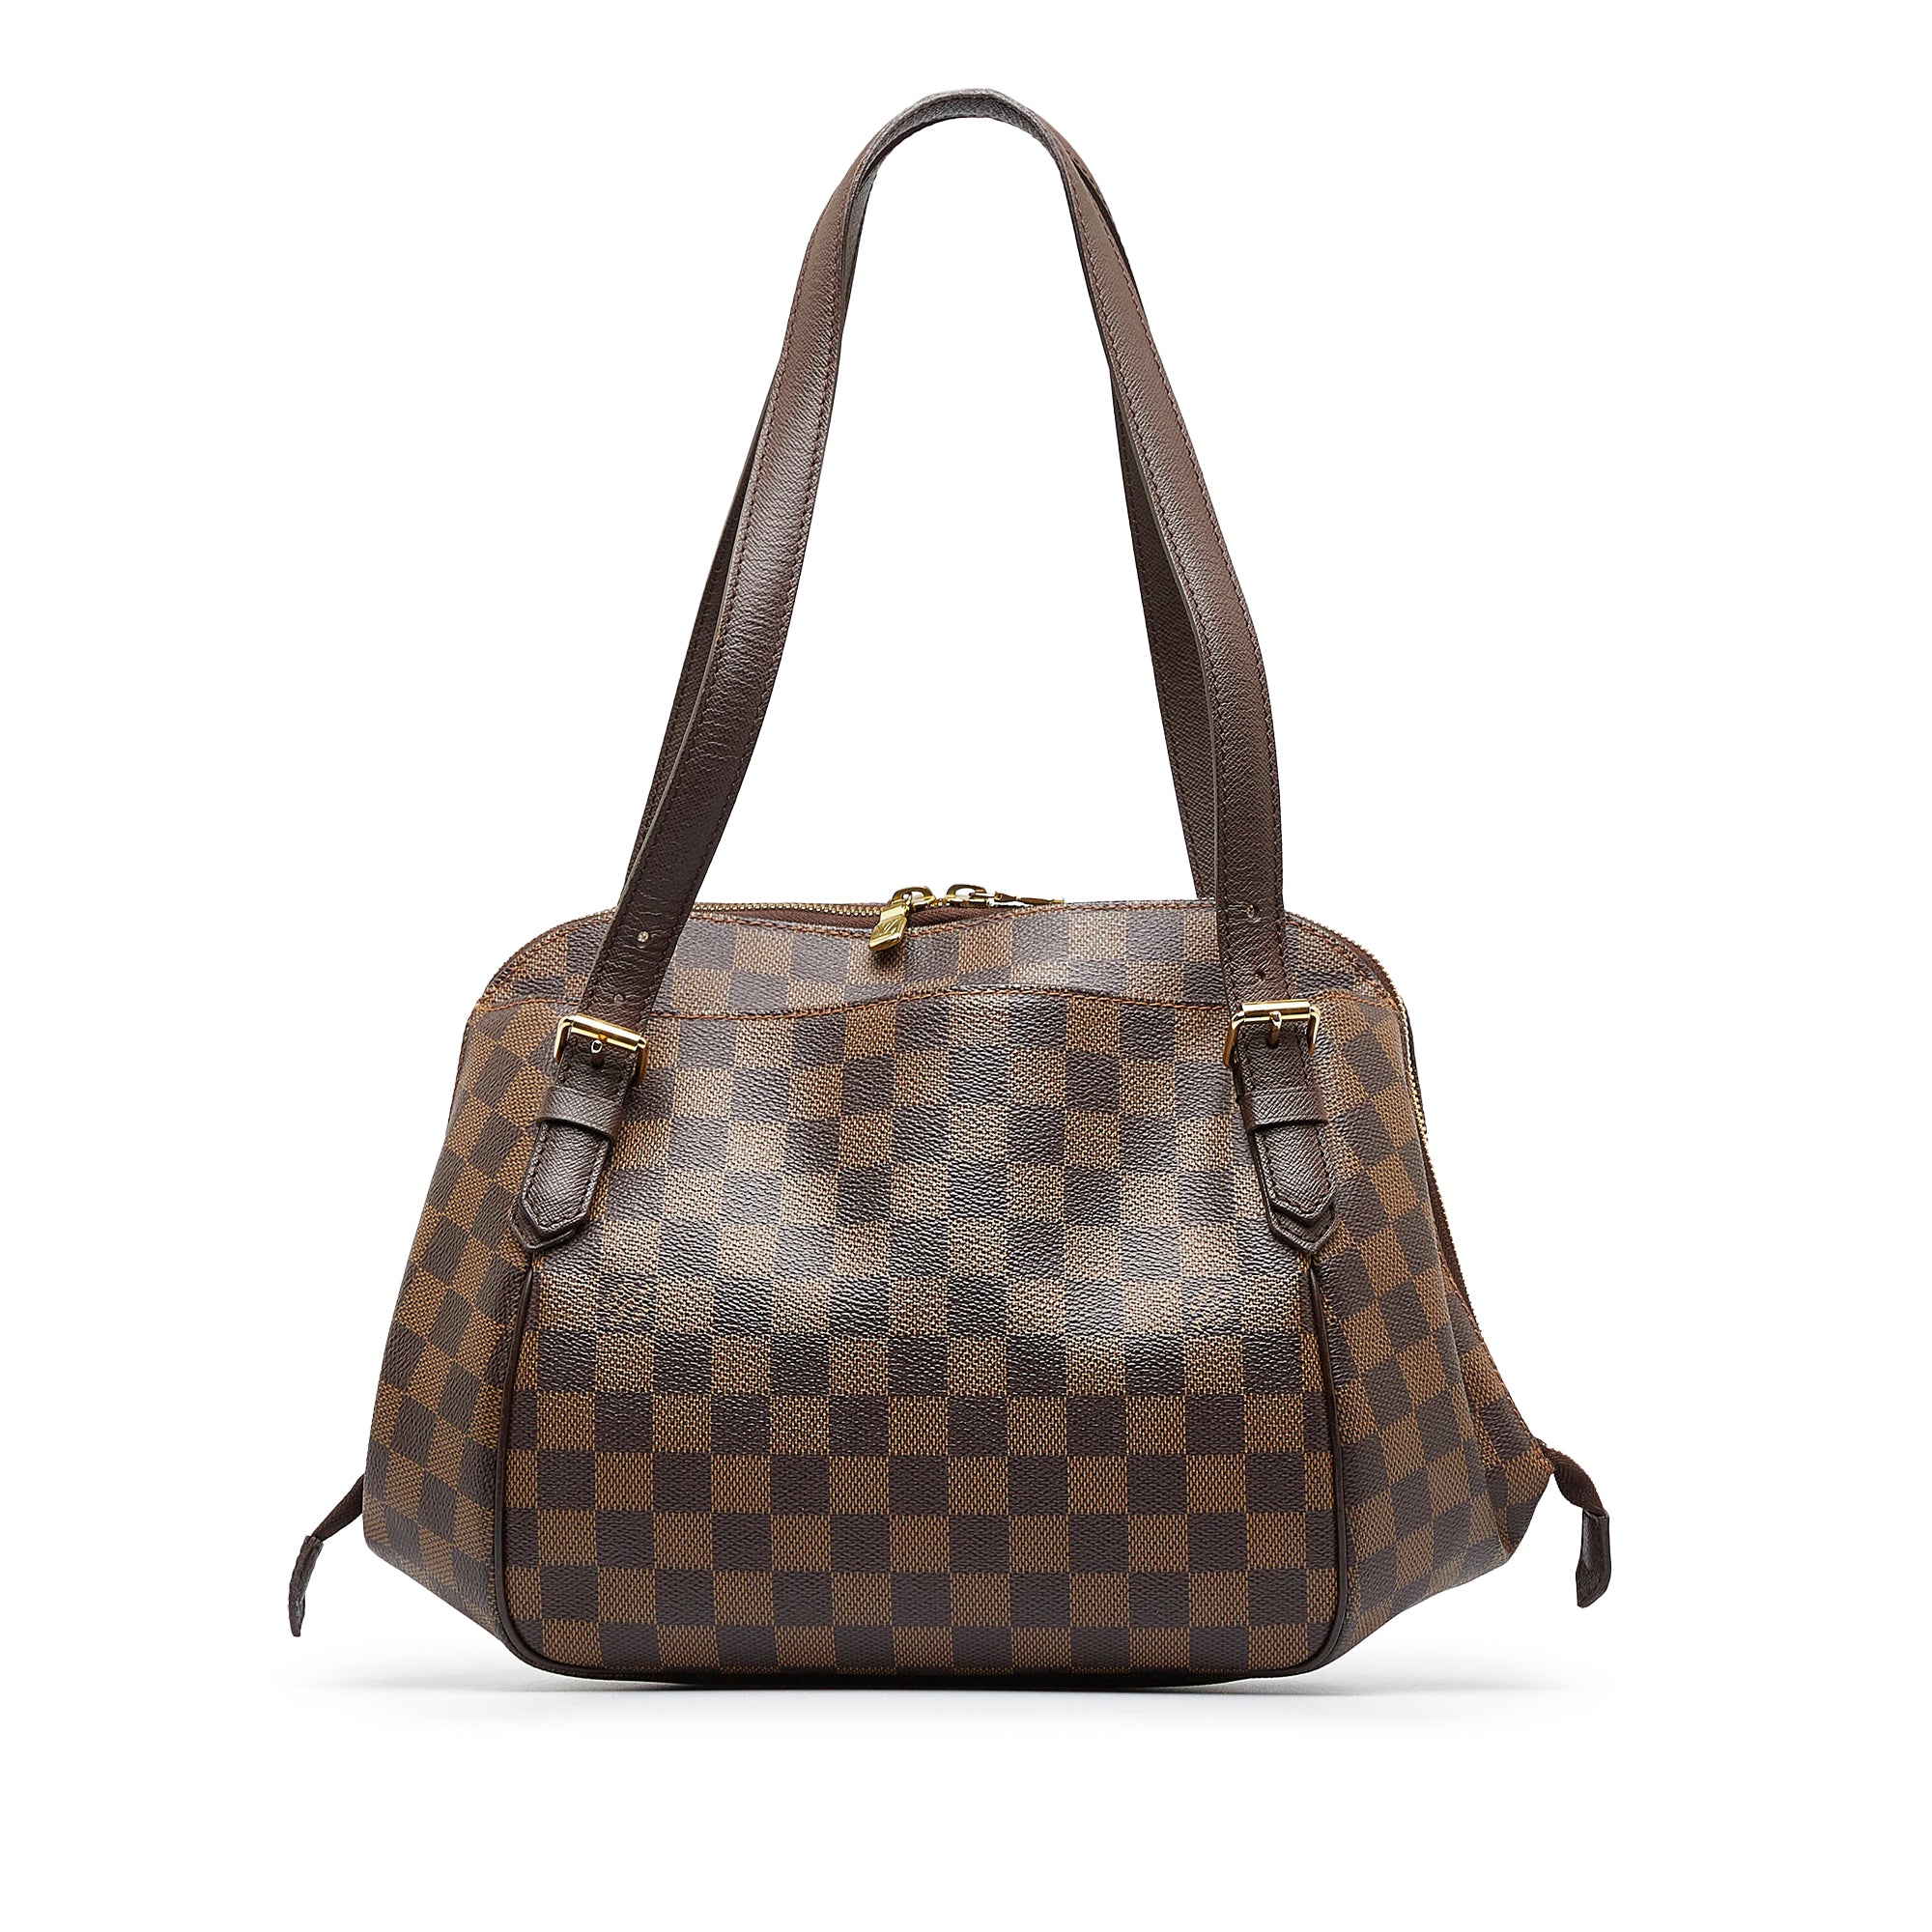 Louis Vuitton, Bags, Authentic Lv Belem Pm